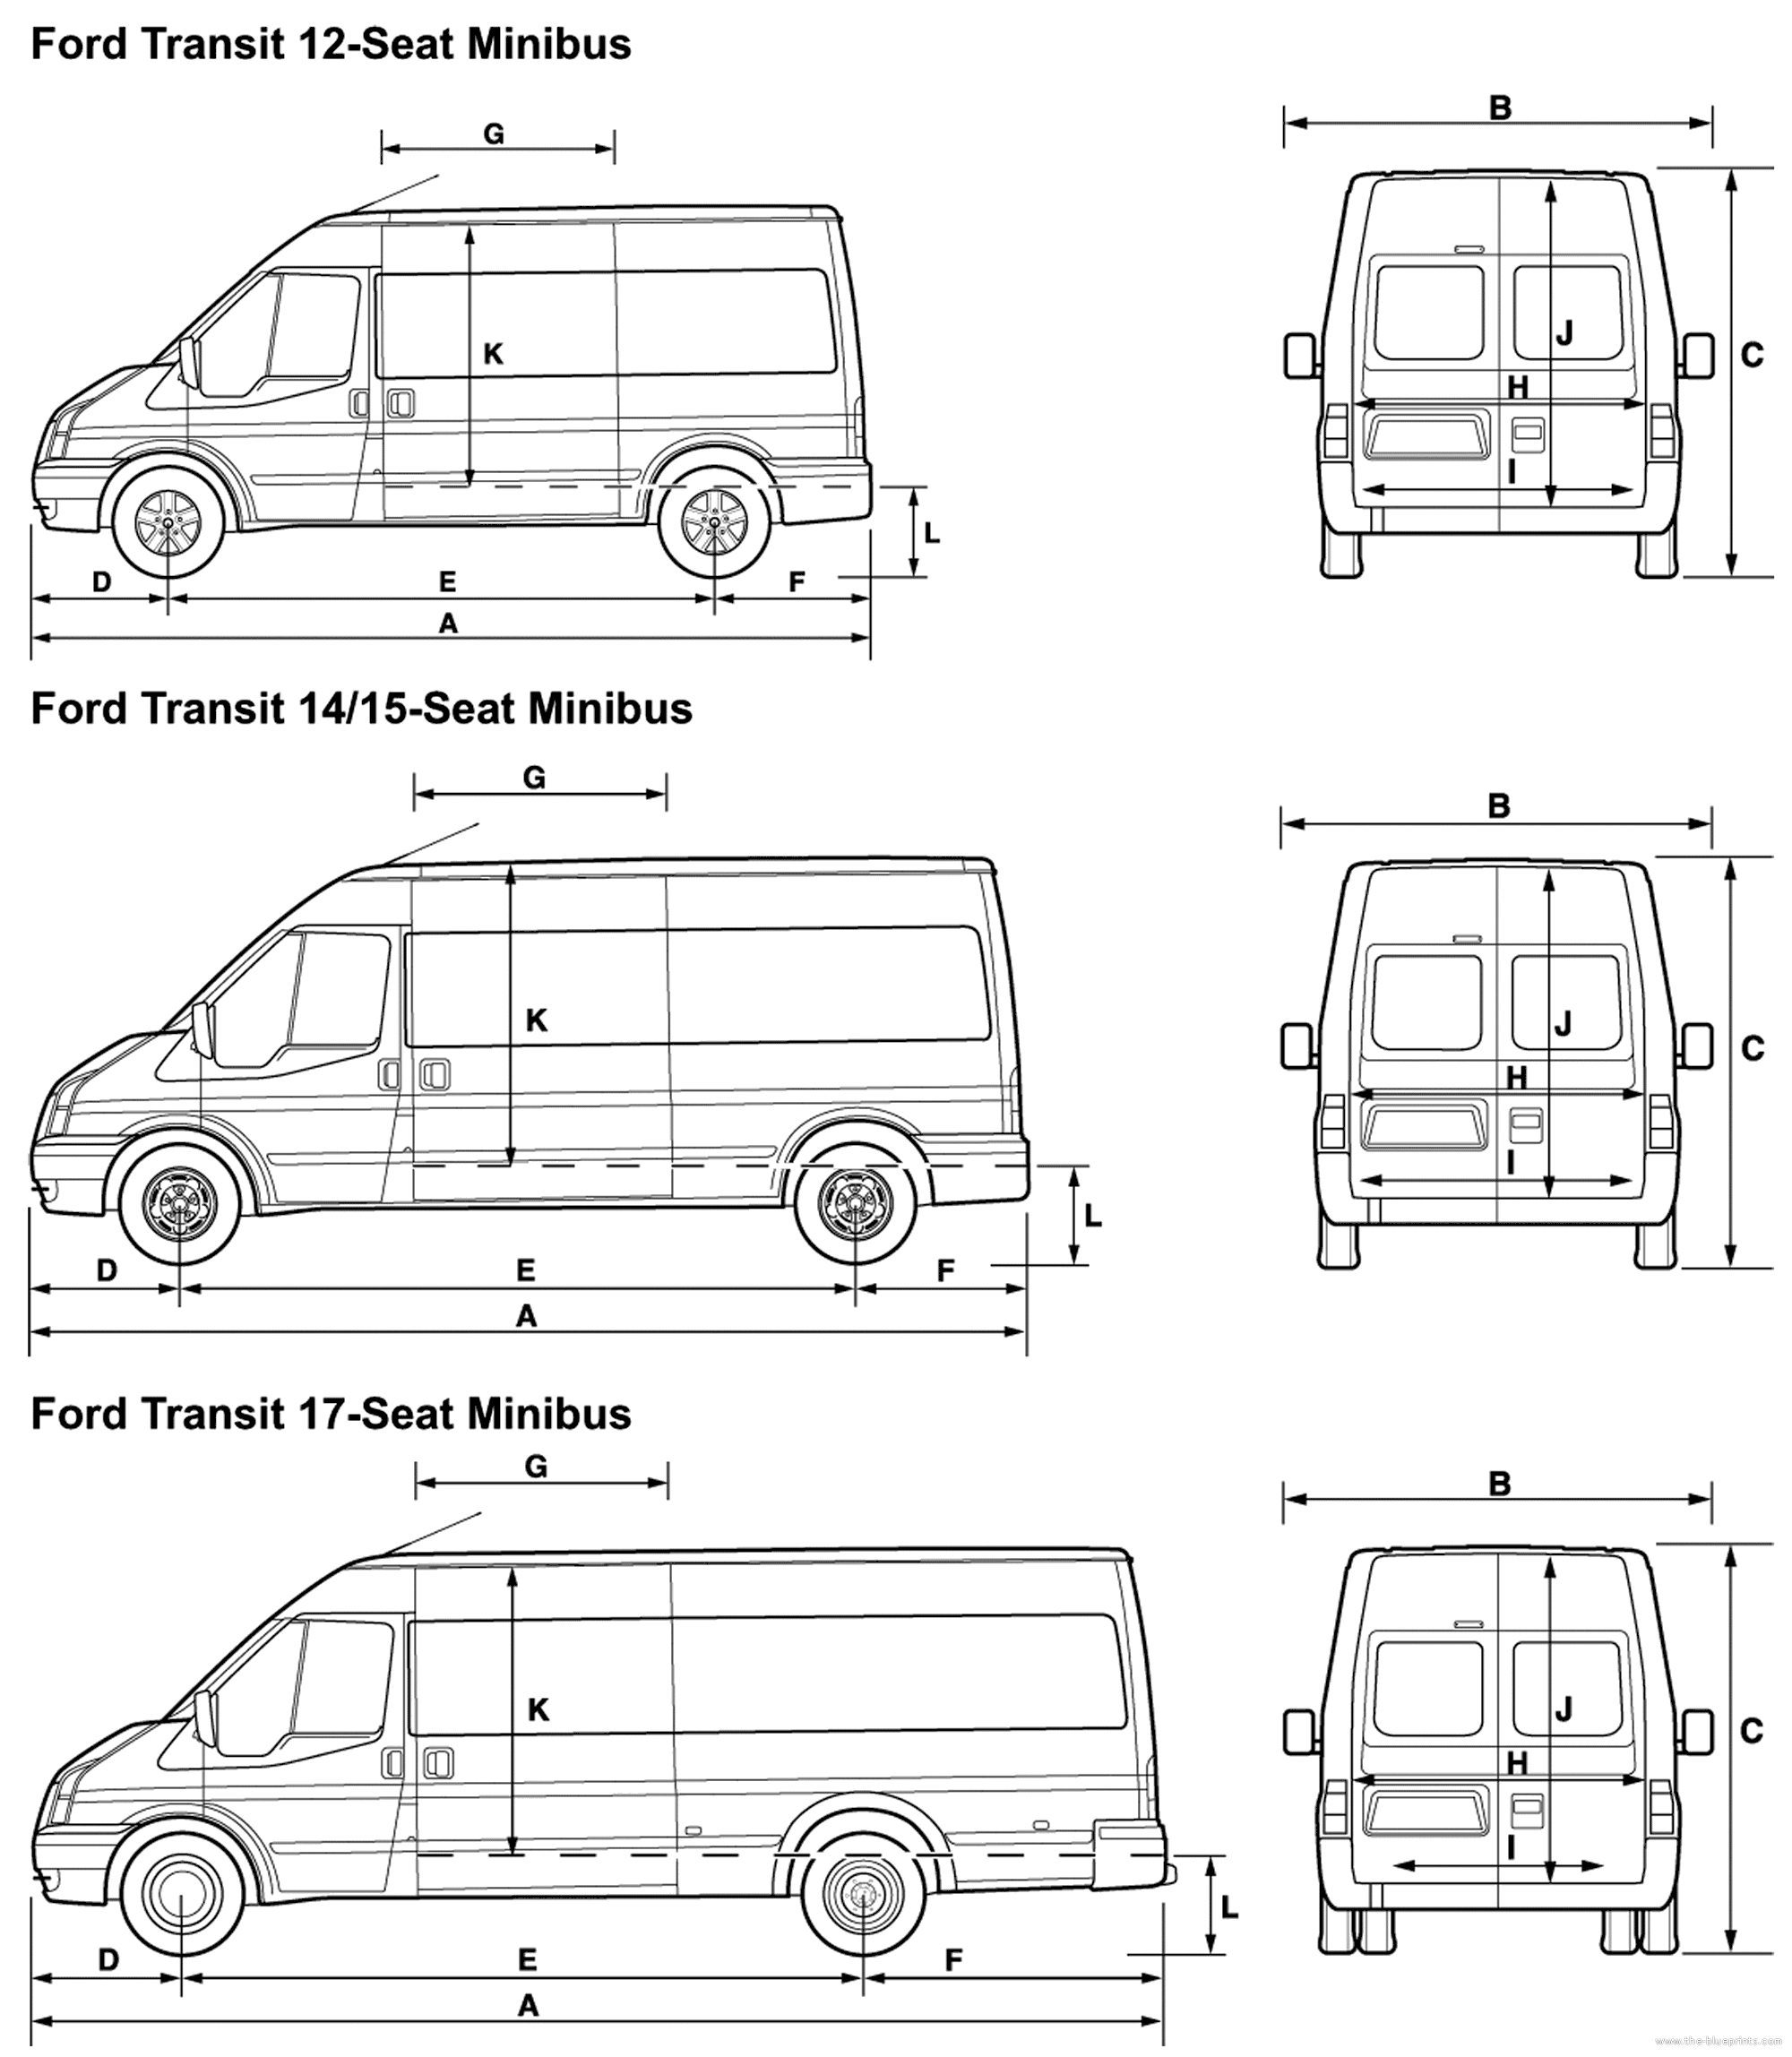 Ford transit panel van dimensions